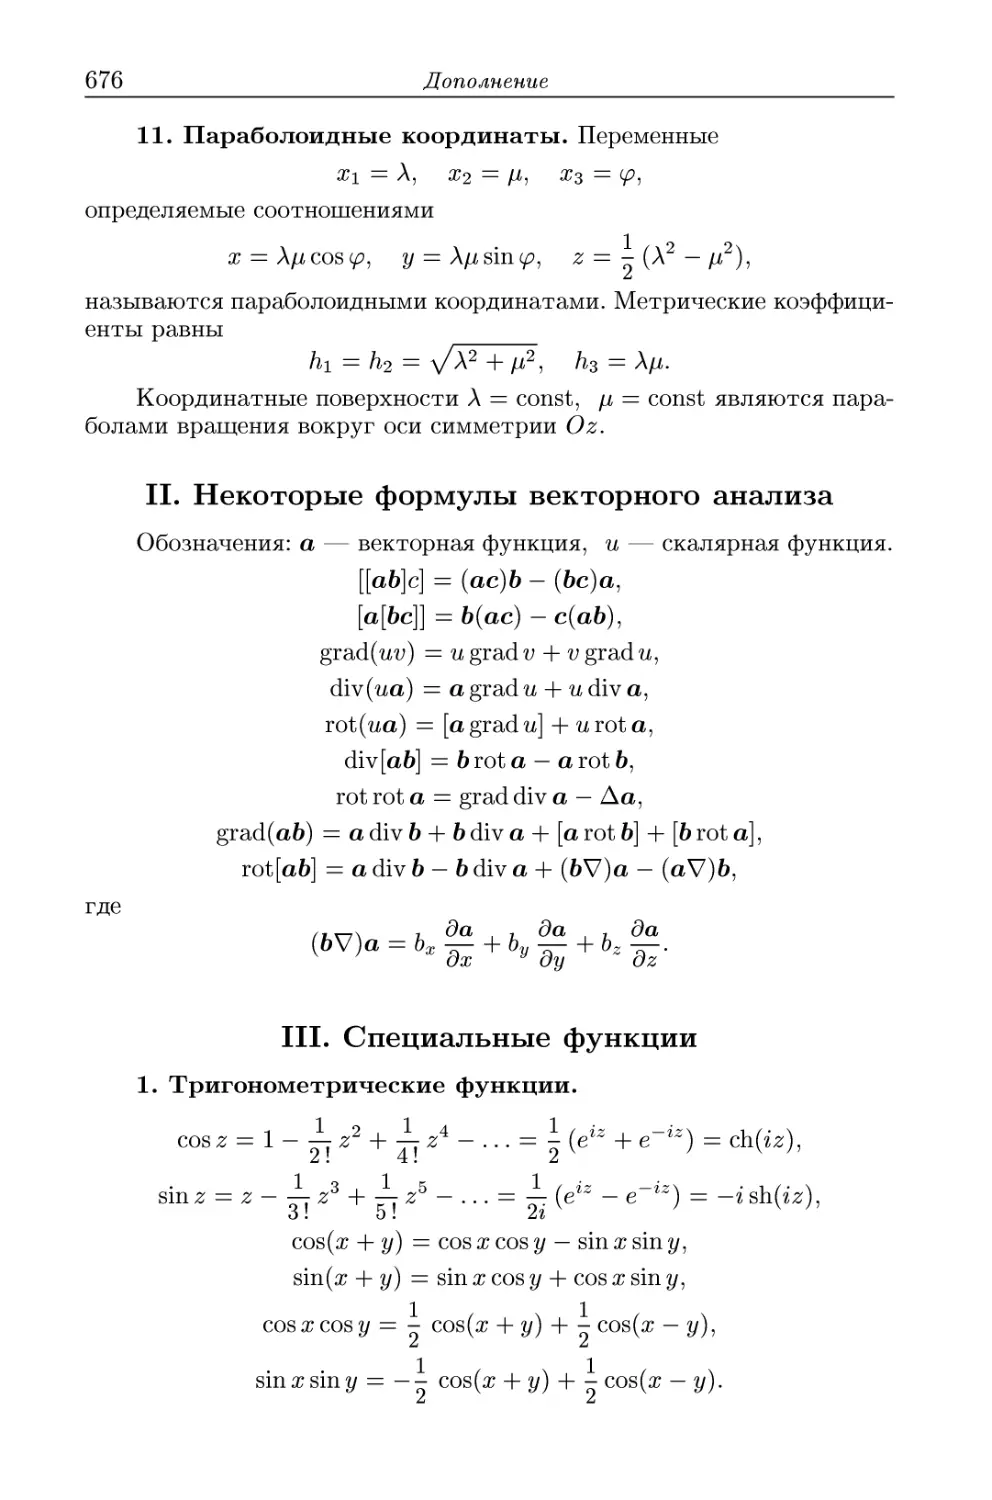 11. Параболоидные координаты
II.  Некоторые формулы векторного анализа
III. Специальные функции